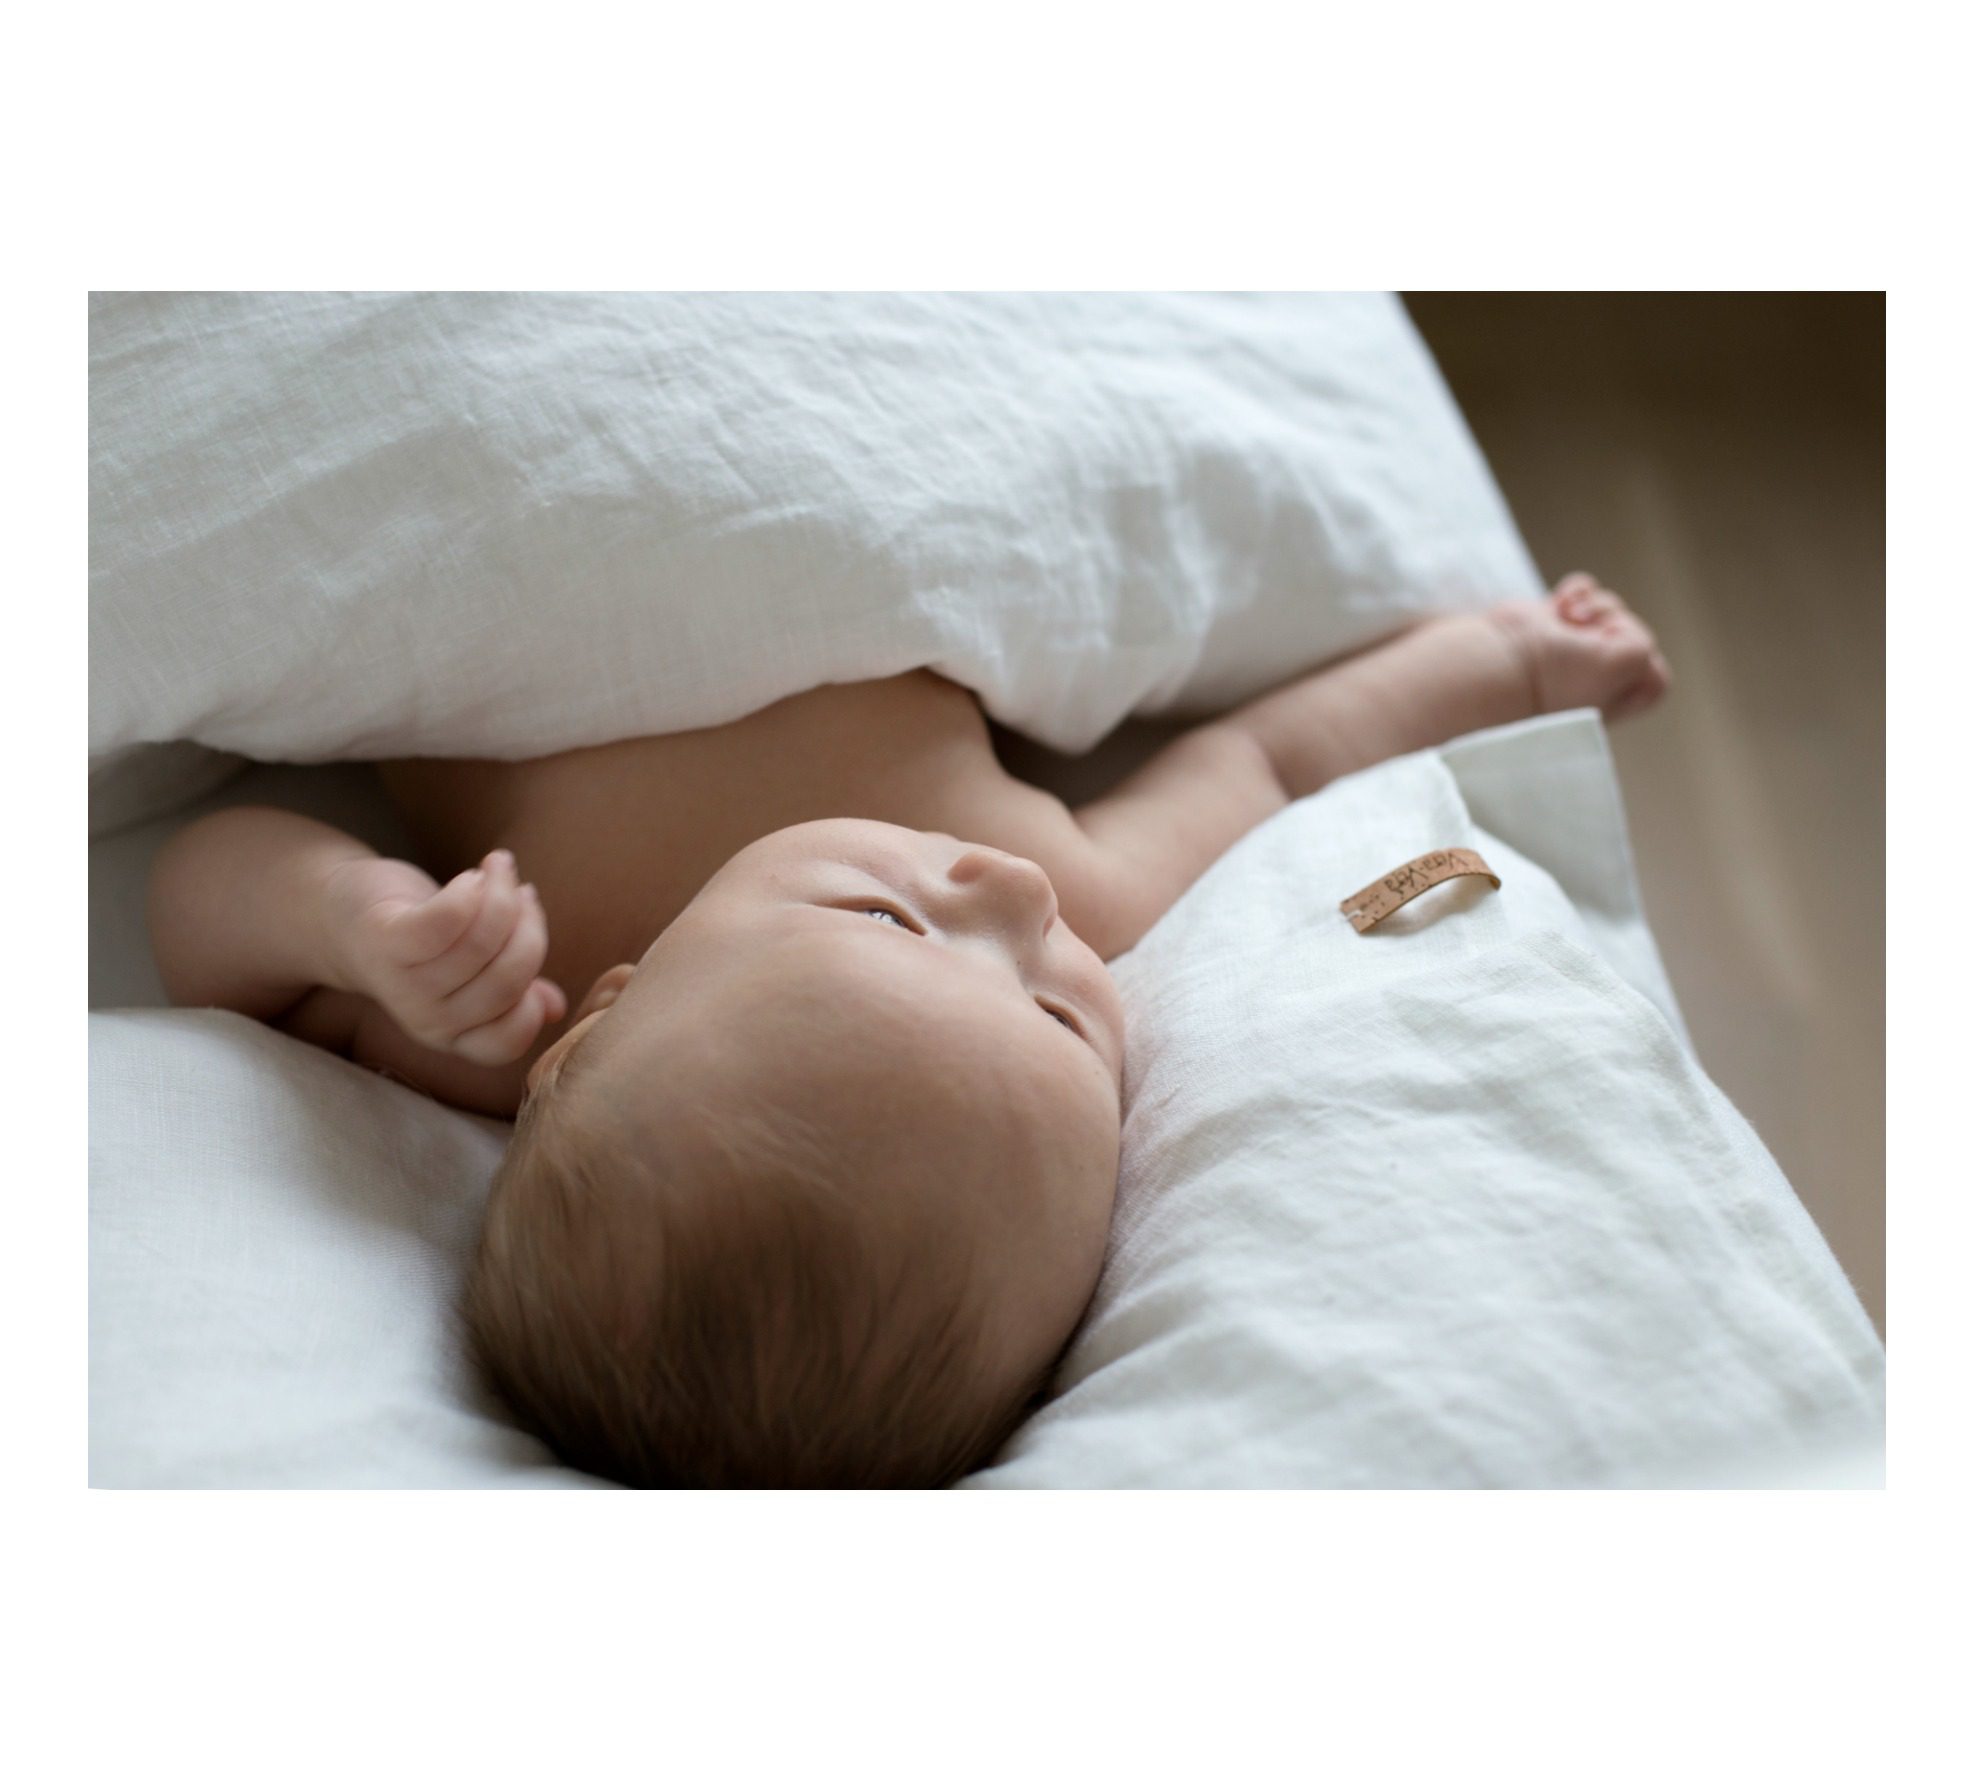 Vera-Veran pehmennyskäsitelty Aina -pellavapussilakanasetti sopii täydellisesti lapsen herkälle iholle! Tässä pussilakanassa ei ole sitä perinteistä pellavan karheutta. Vauva on ihana peitellä suloisille unille keveän peiton alle. Pehmeän valkoinen väri rauhoittaa vauvaa ja auttaa nukahtamaan.